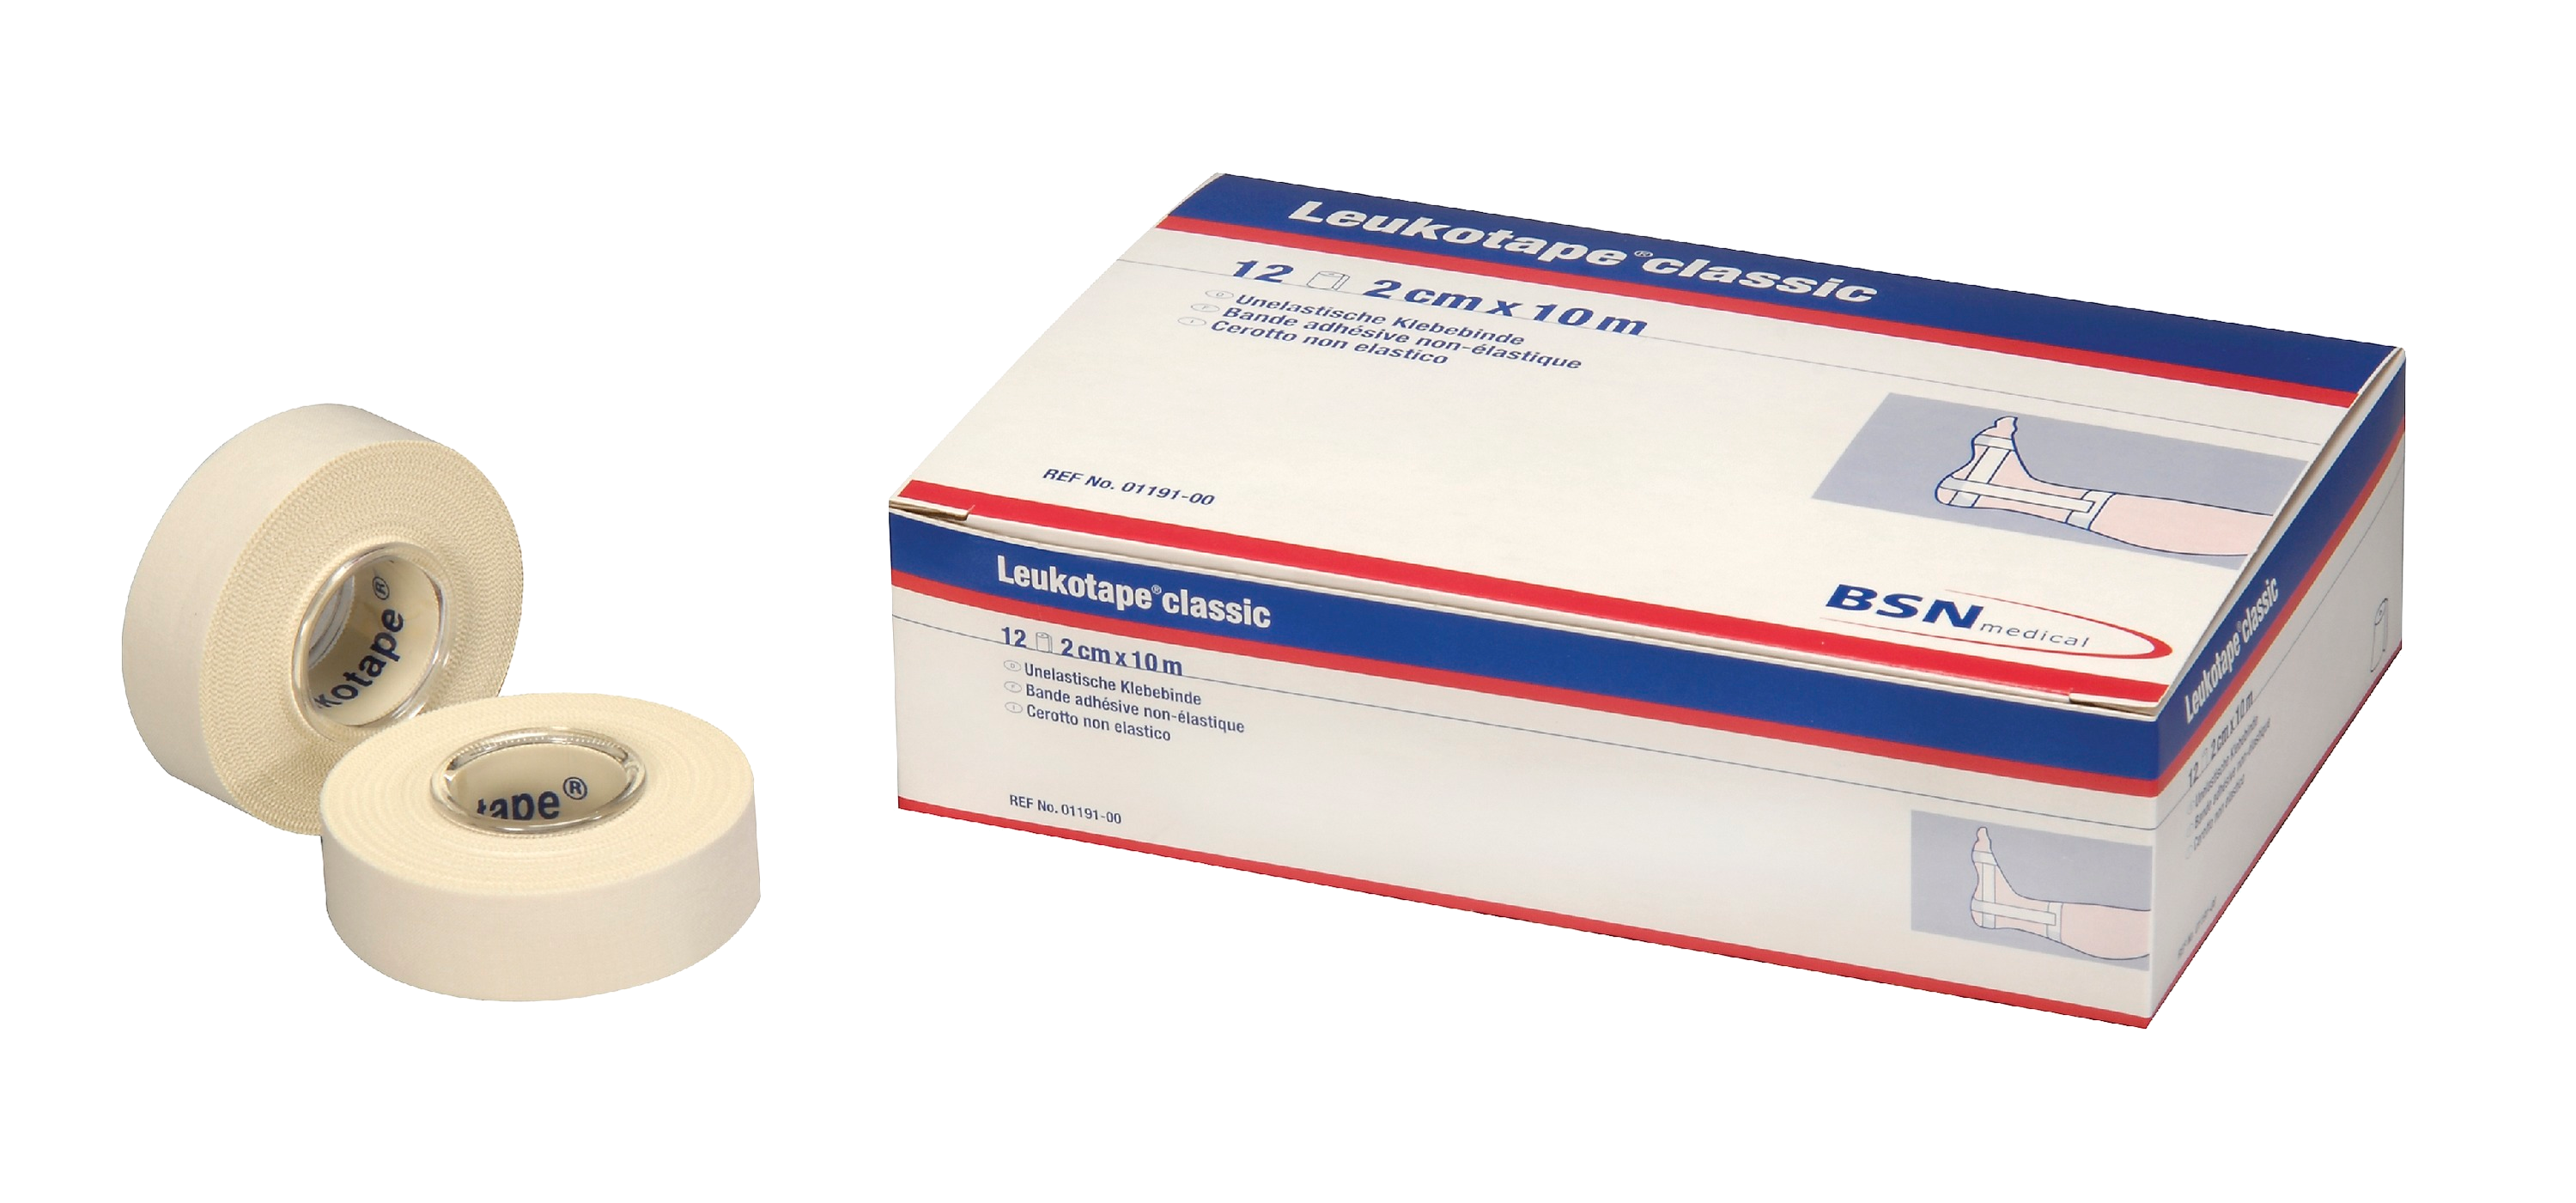 BSN Leukotape 2,0cm 12er Verpackungseinheit mit zwei Einzelrollen davor